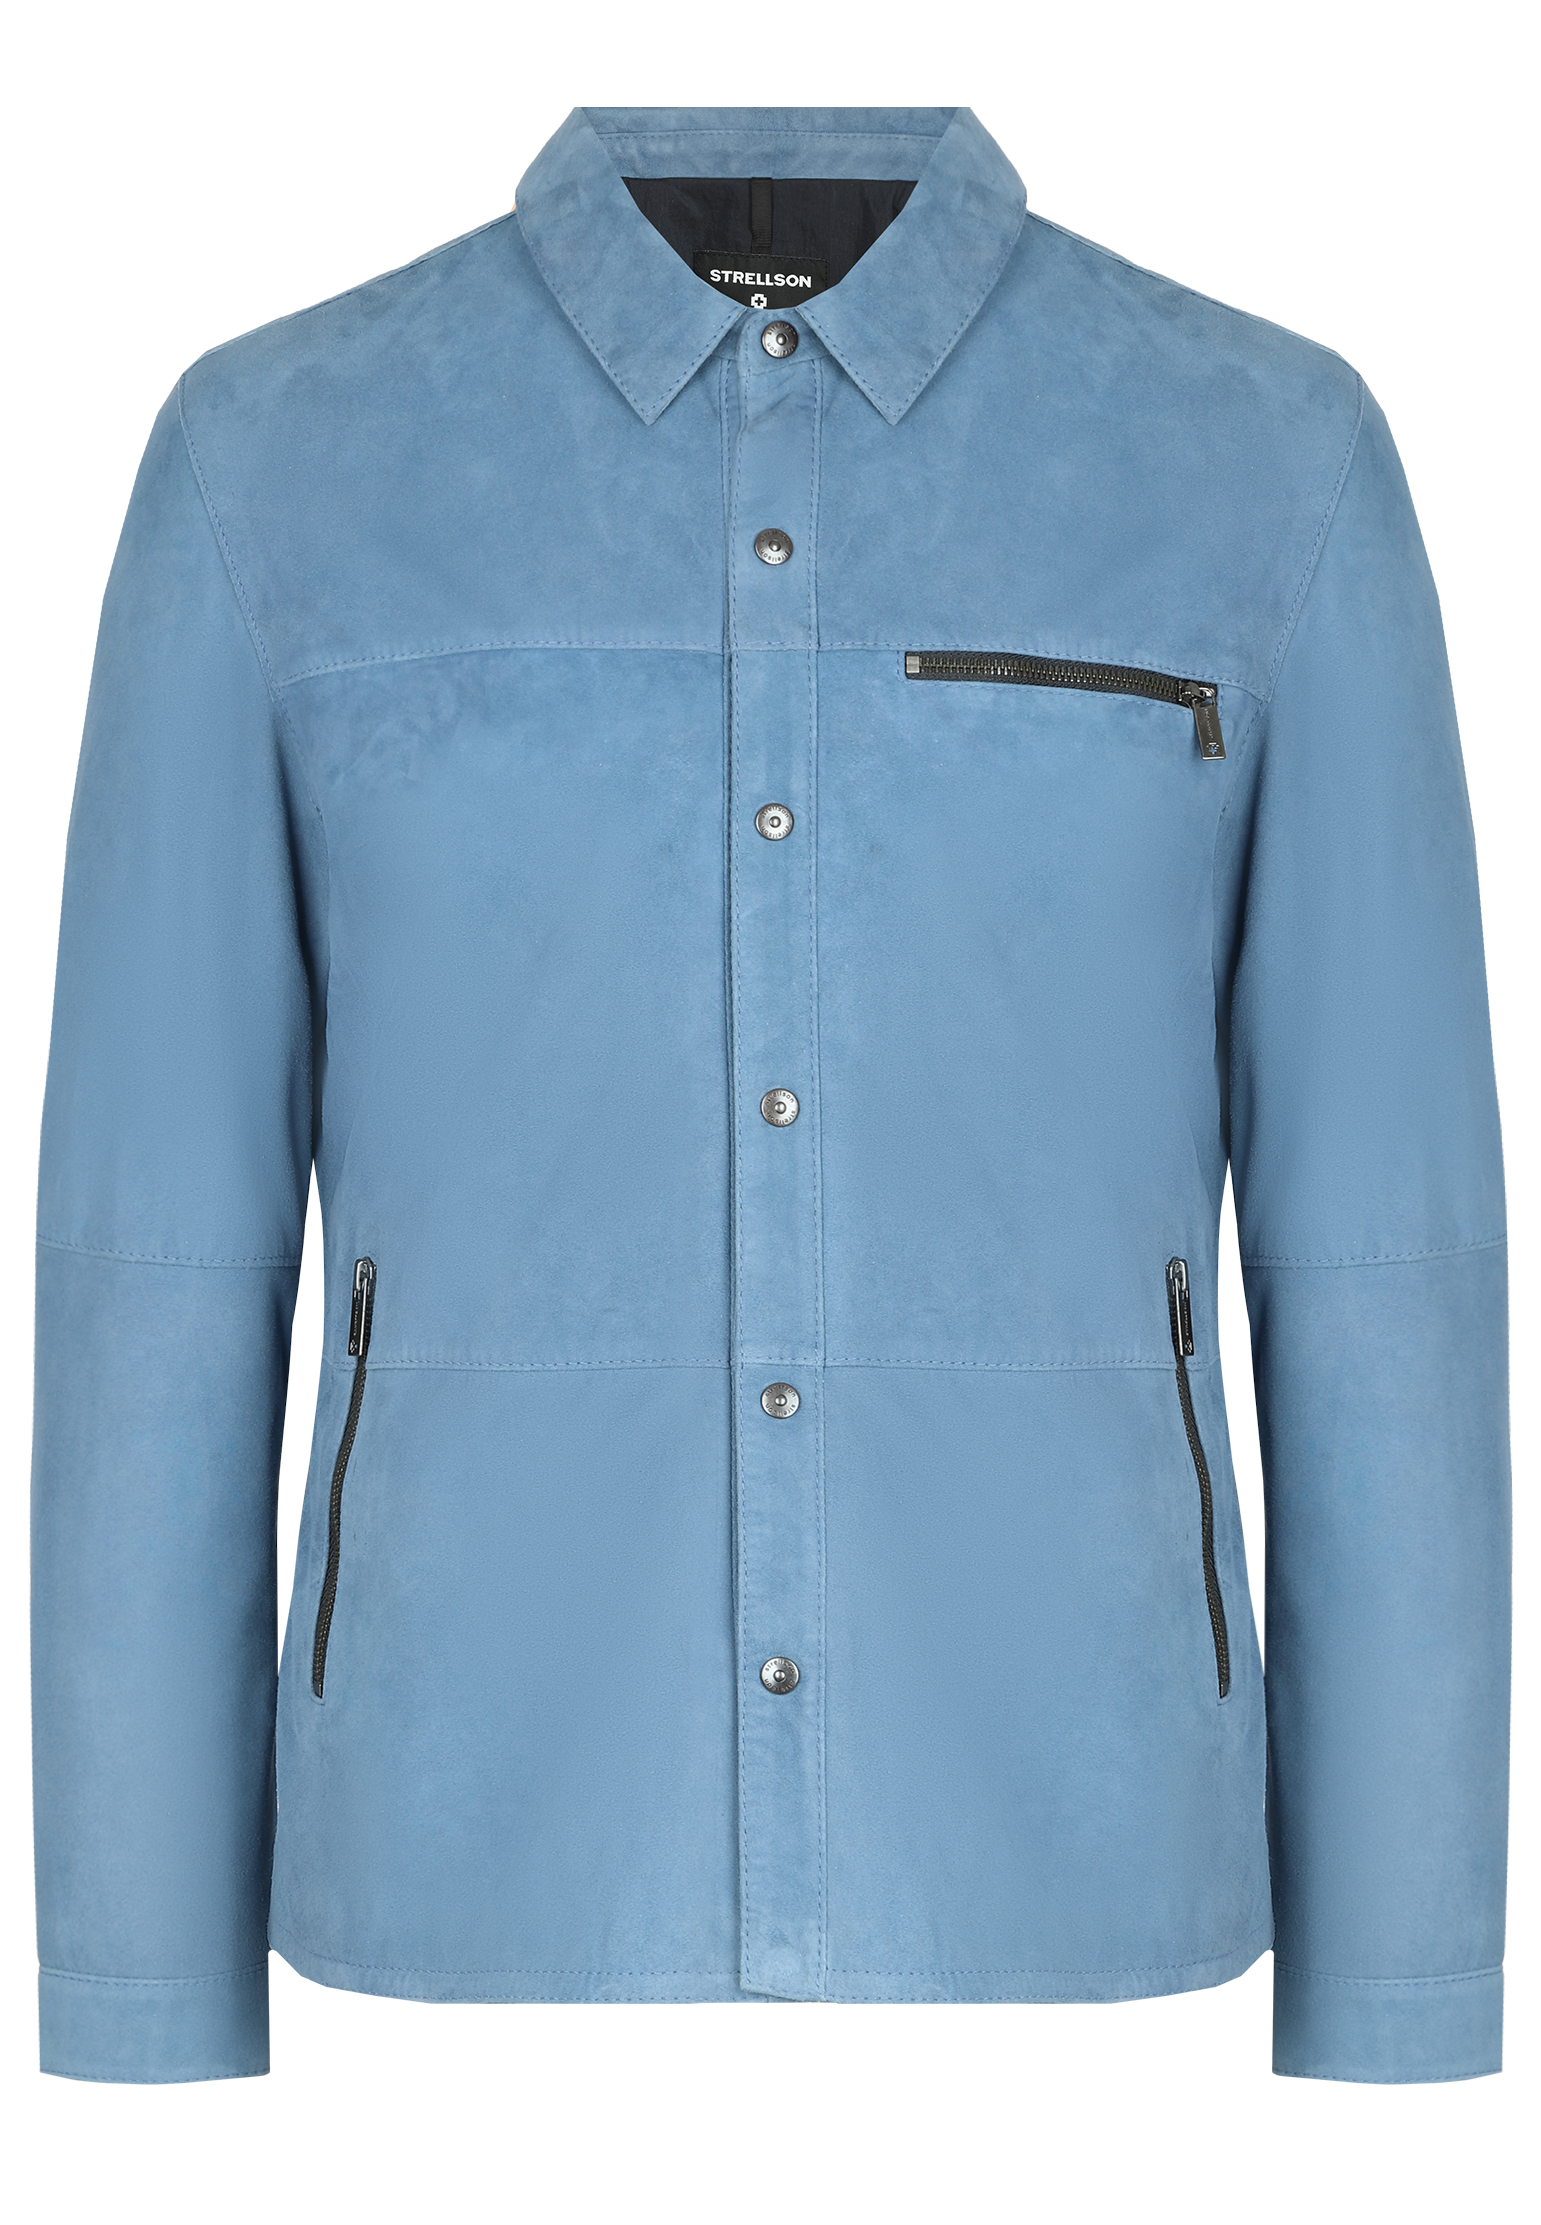 Куртка STRELLSON Синий, размер 52 160348 - фото 1